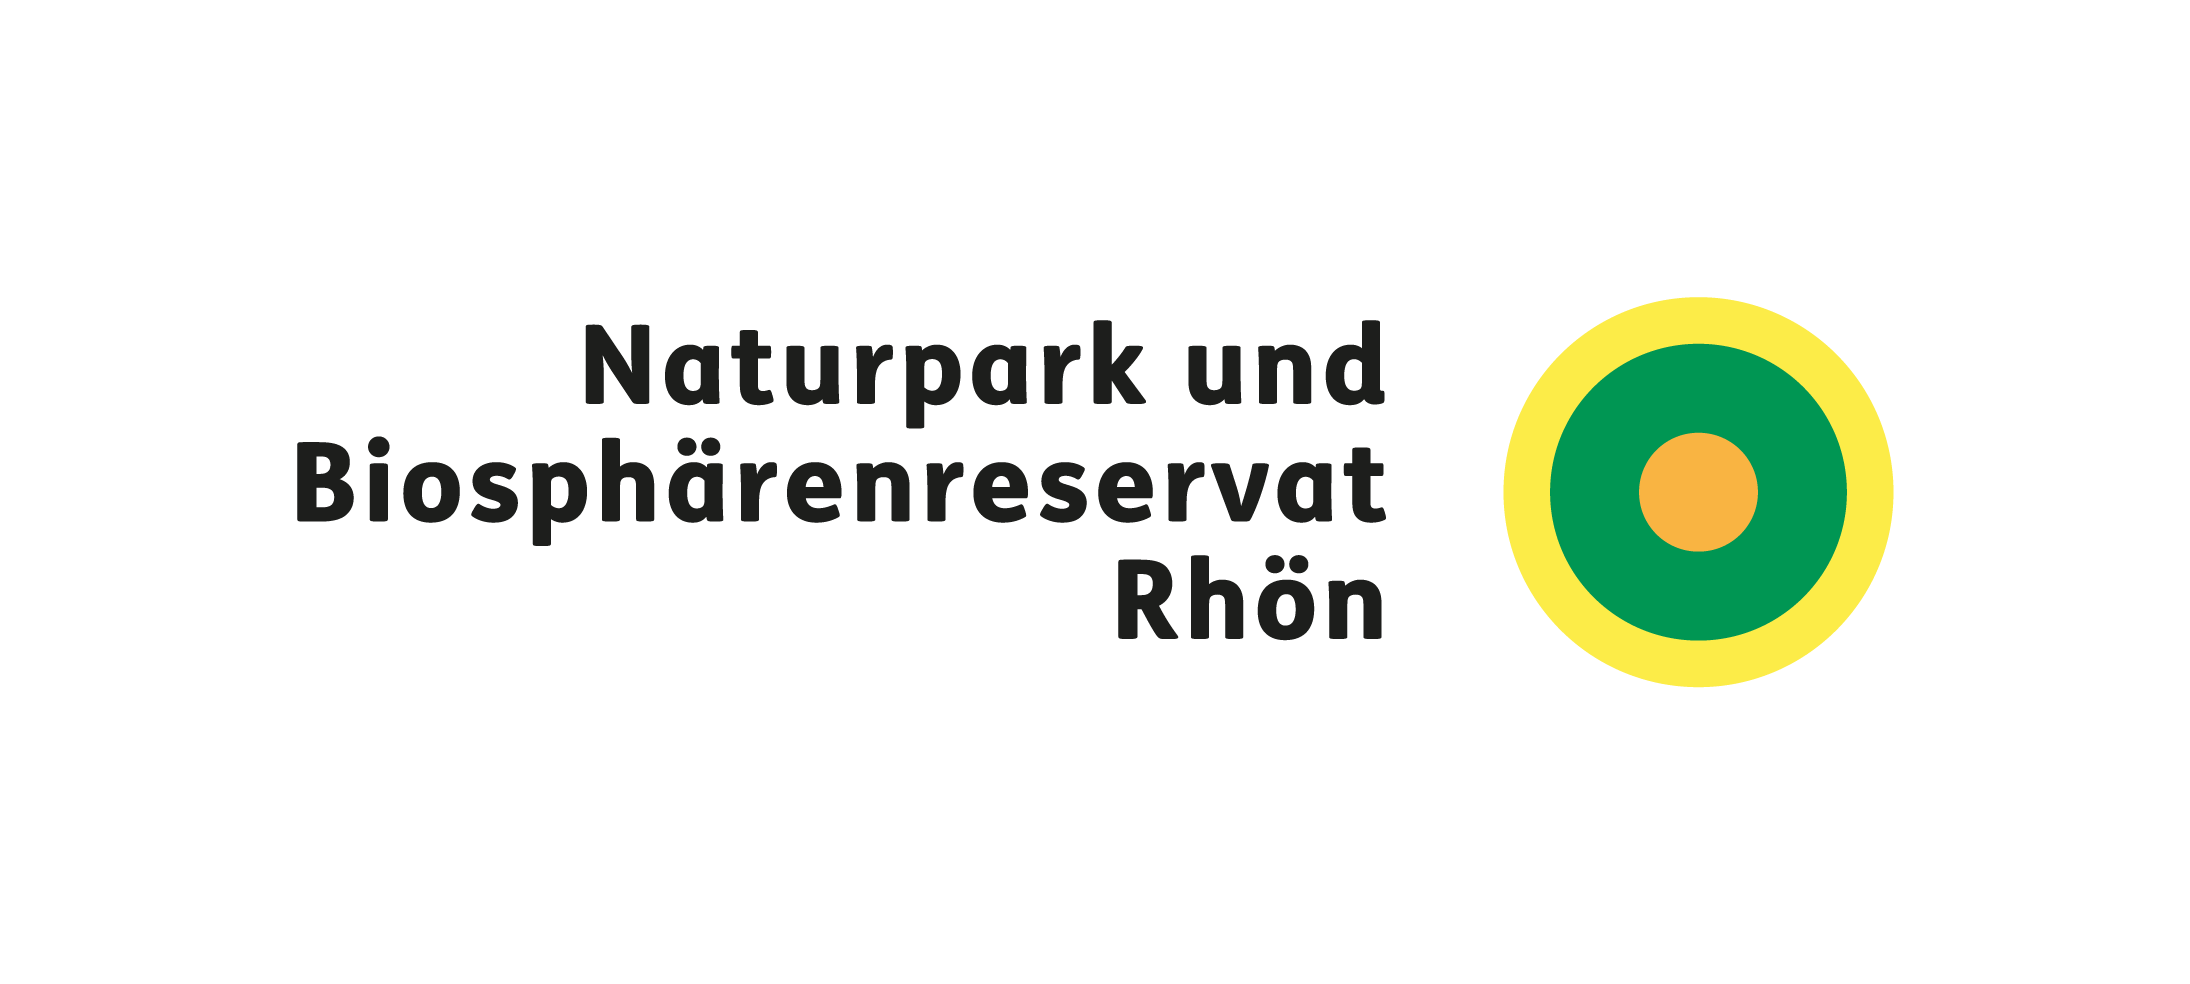 Bayerische Rhön, Nature Park